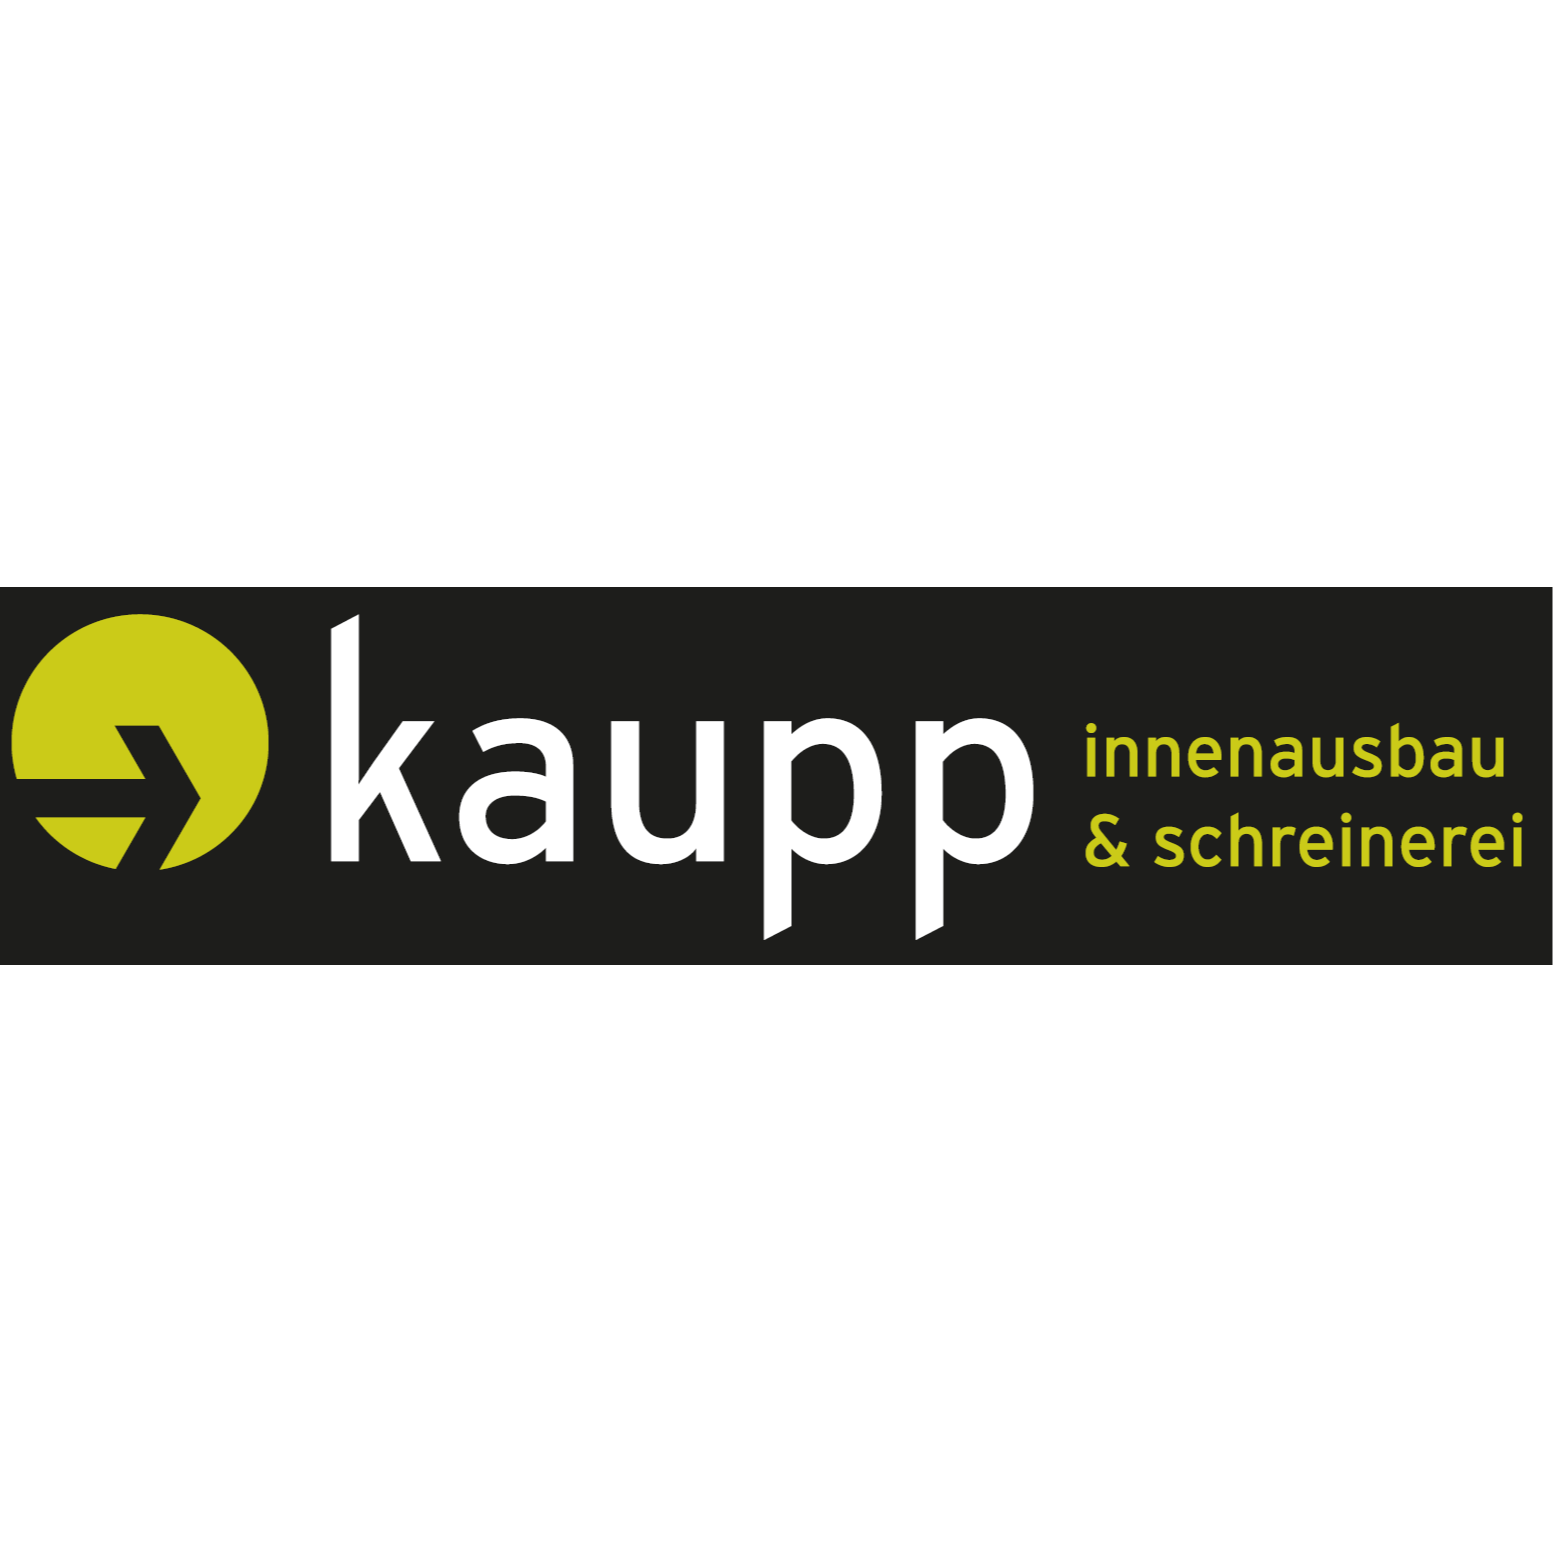 Michael Kaupp Innenausbau & Schreinerei in Eningen unter Achalm - Logo